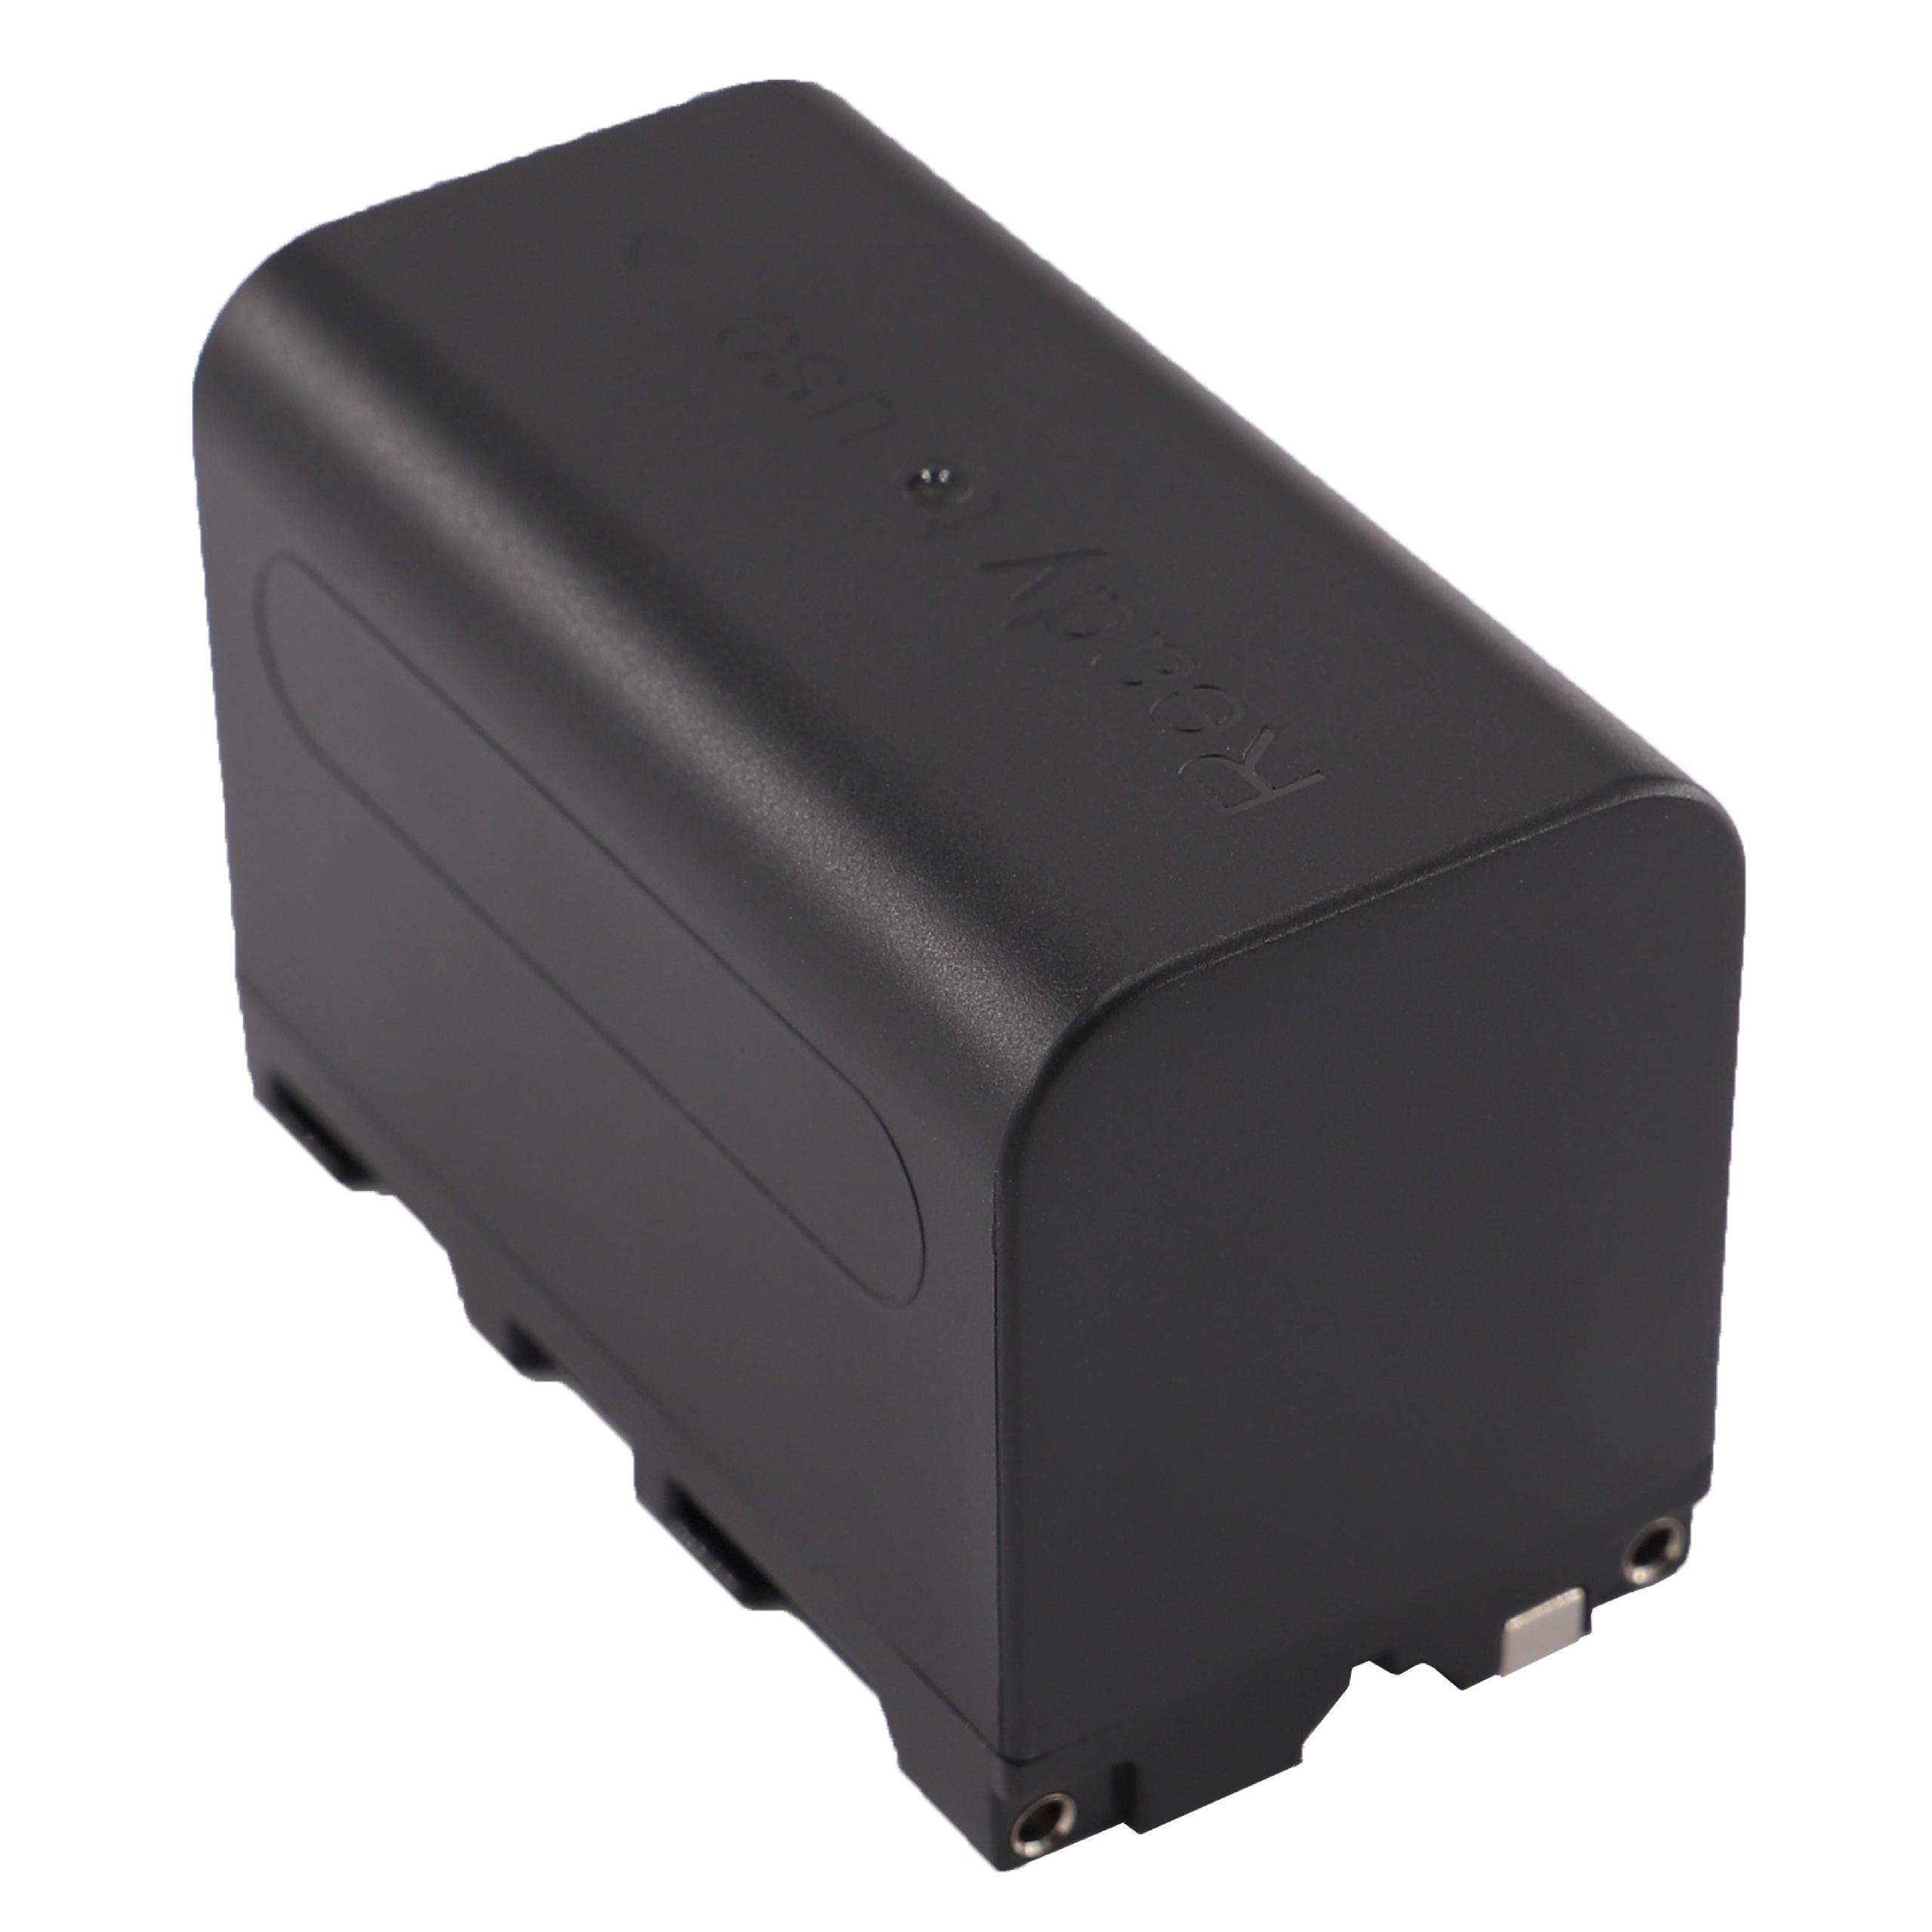 VHBW kompatibel mit Sony 4000 Kamera, 7.4 CCD-TRV51 CCD-TRV48E, CCD-TRV47E, - Akku CCD-TRV517, CCD-TRV49, CCD-TRV48, CCD-TRV54E, Li-Ion Volt